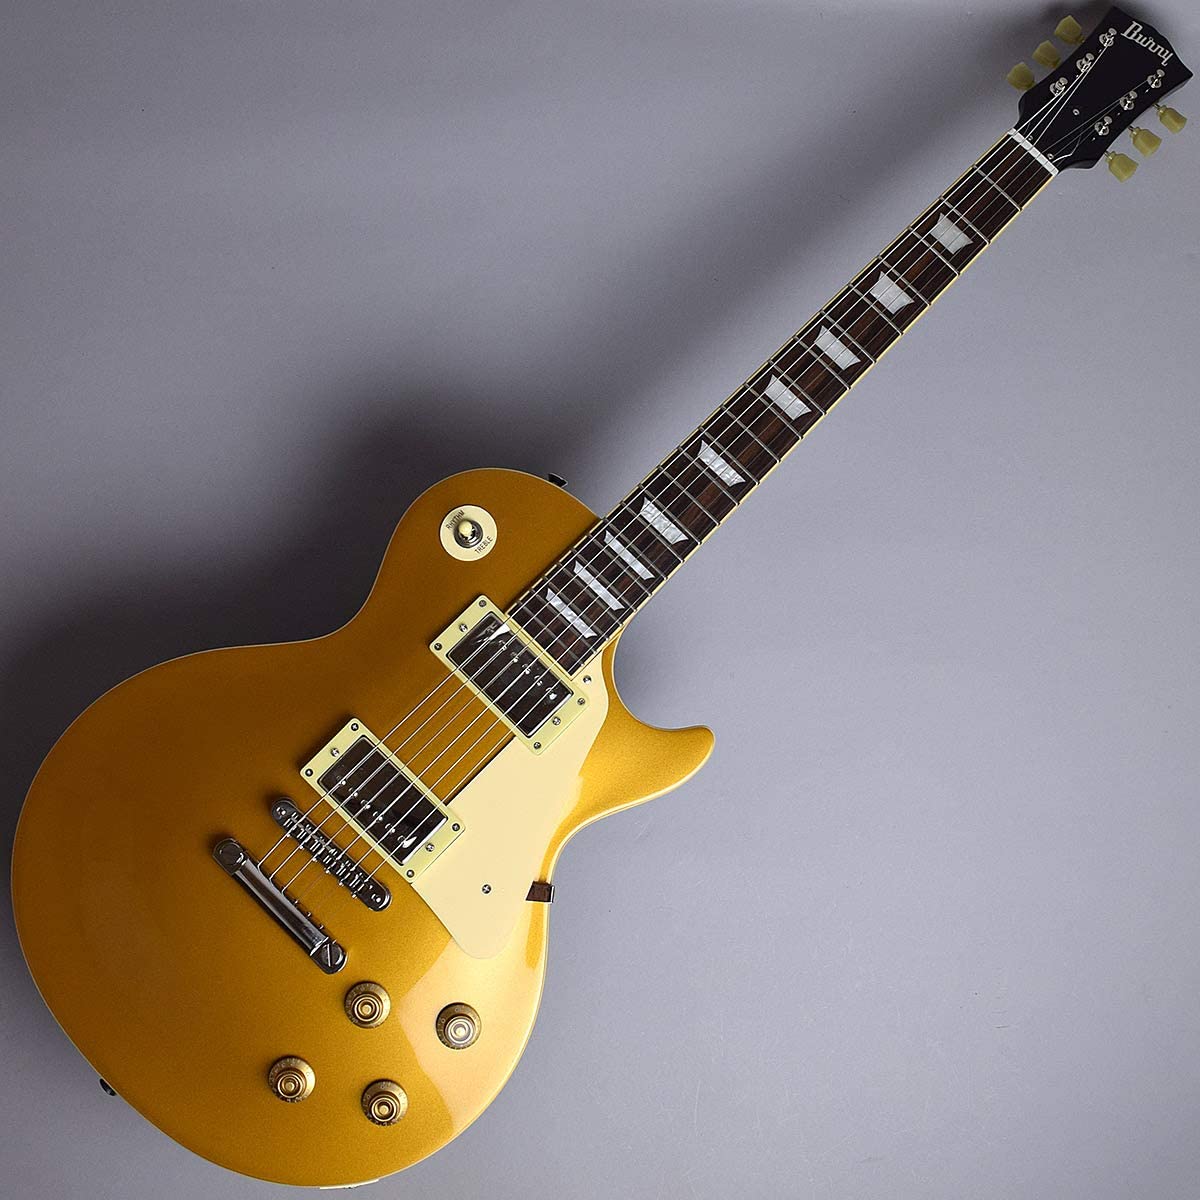 Burny SRLG55 Vintage Gold Top レスポールタイプ エレキギター ゴールドトップ バーニー - 買取サービス 全国